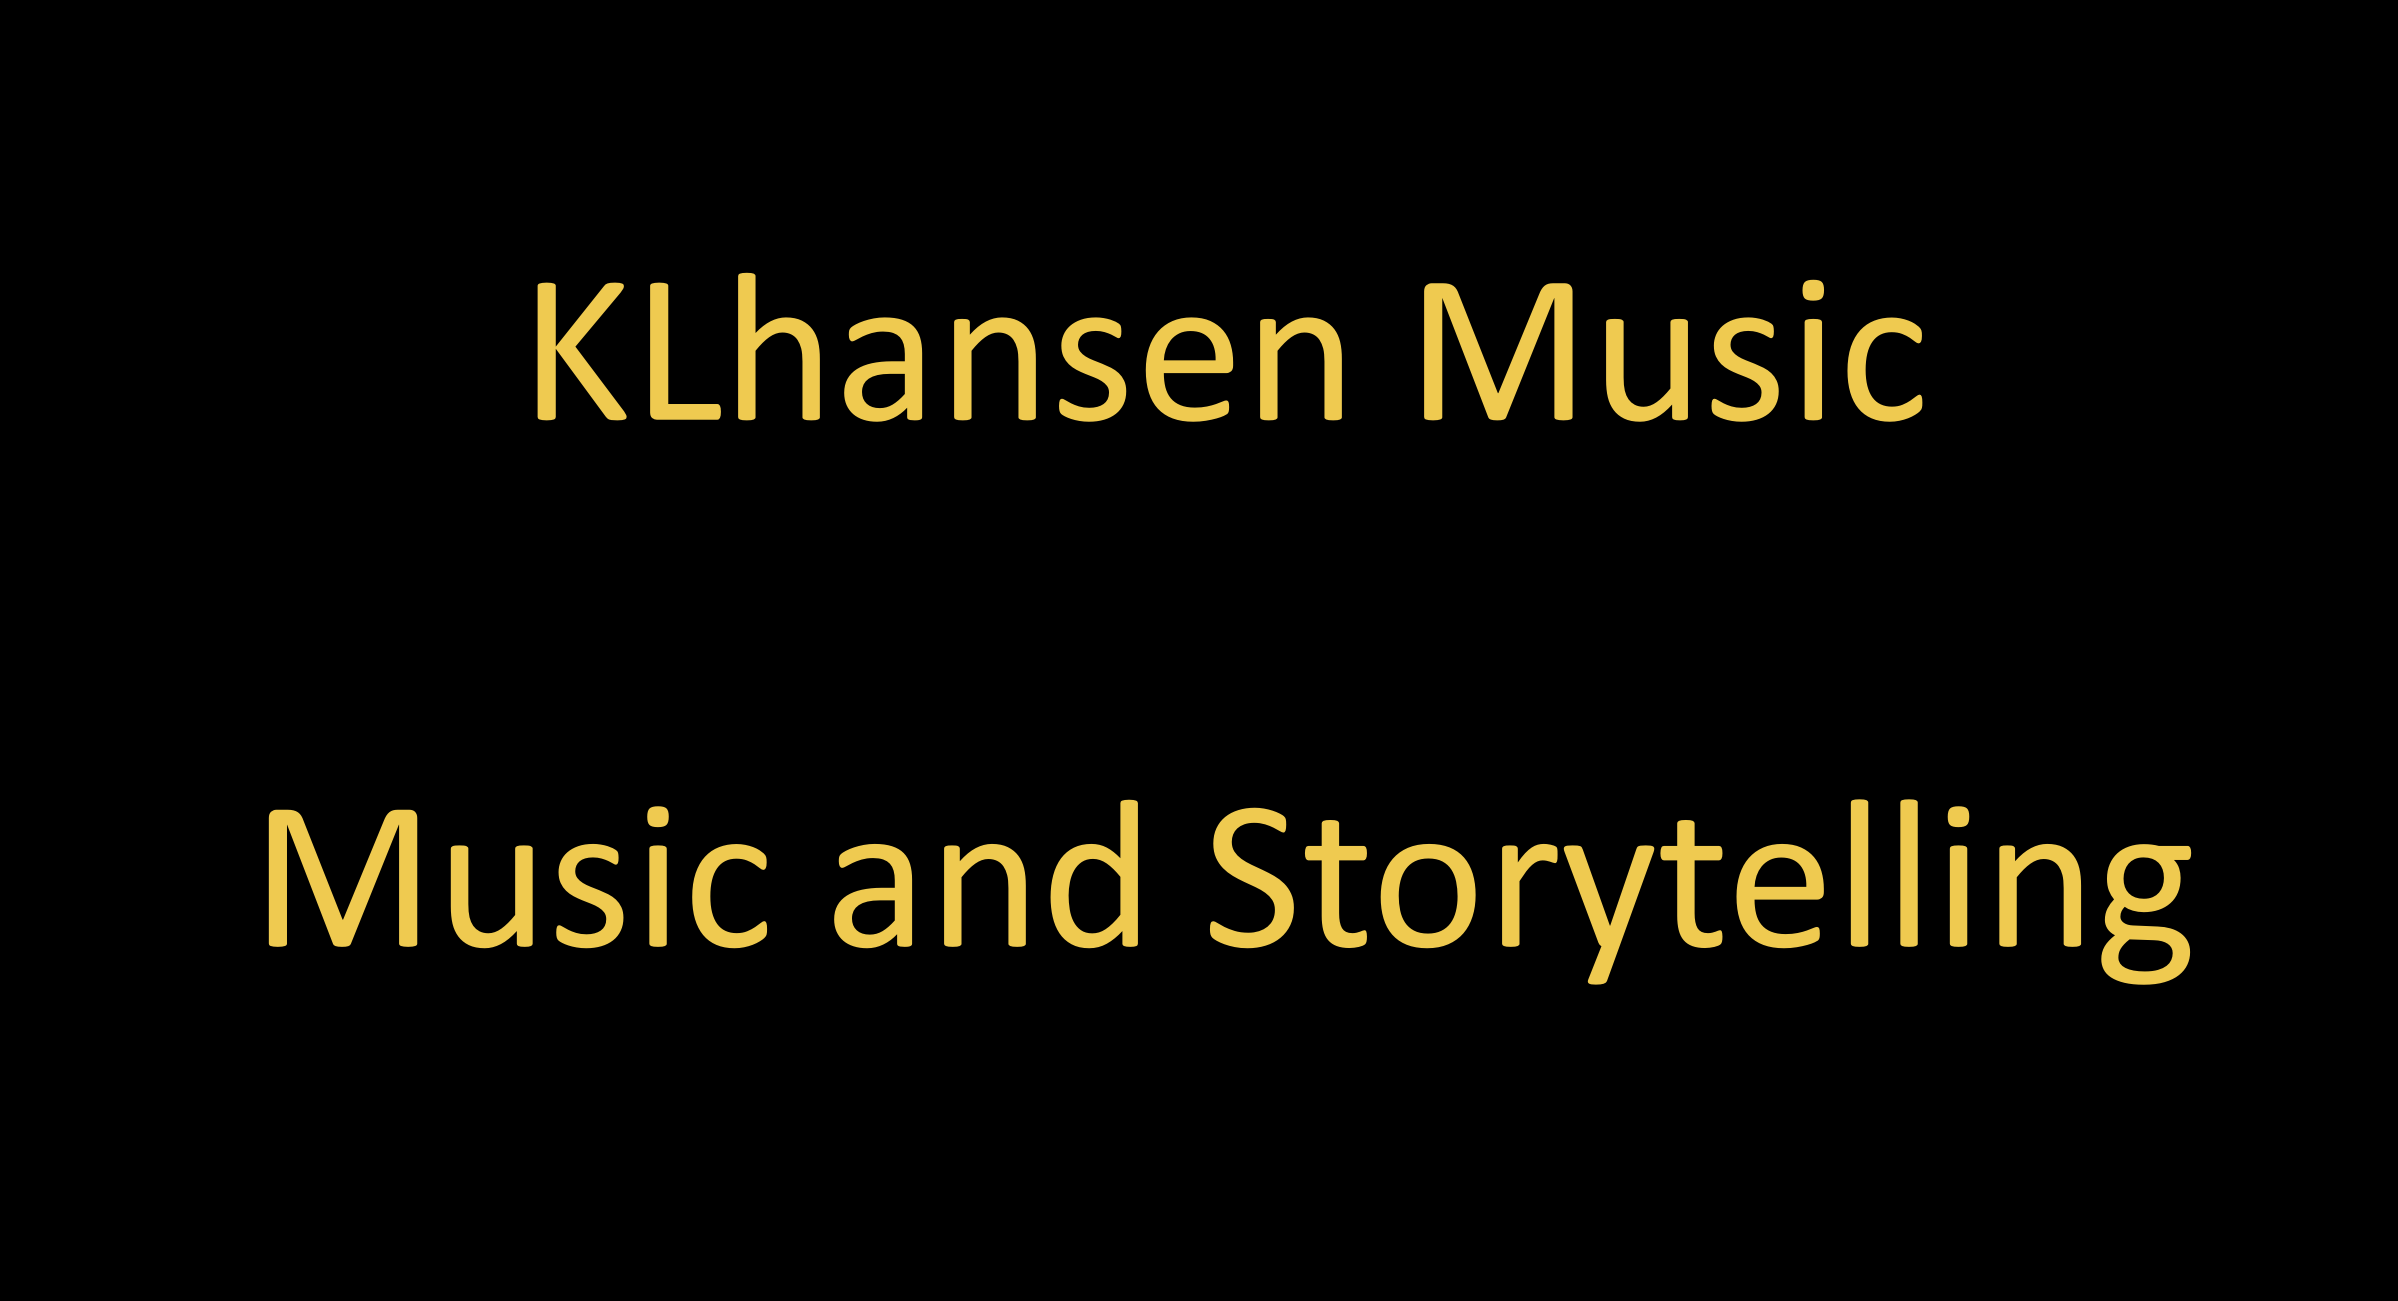 KLhansen Music